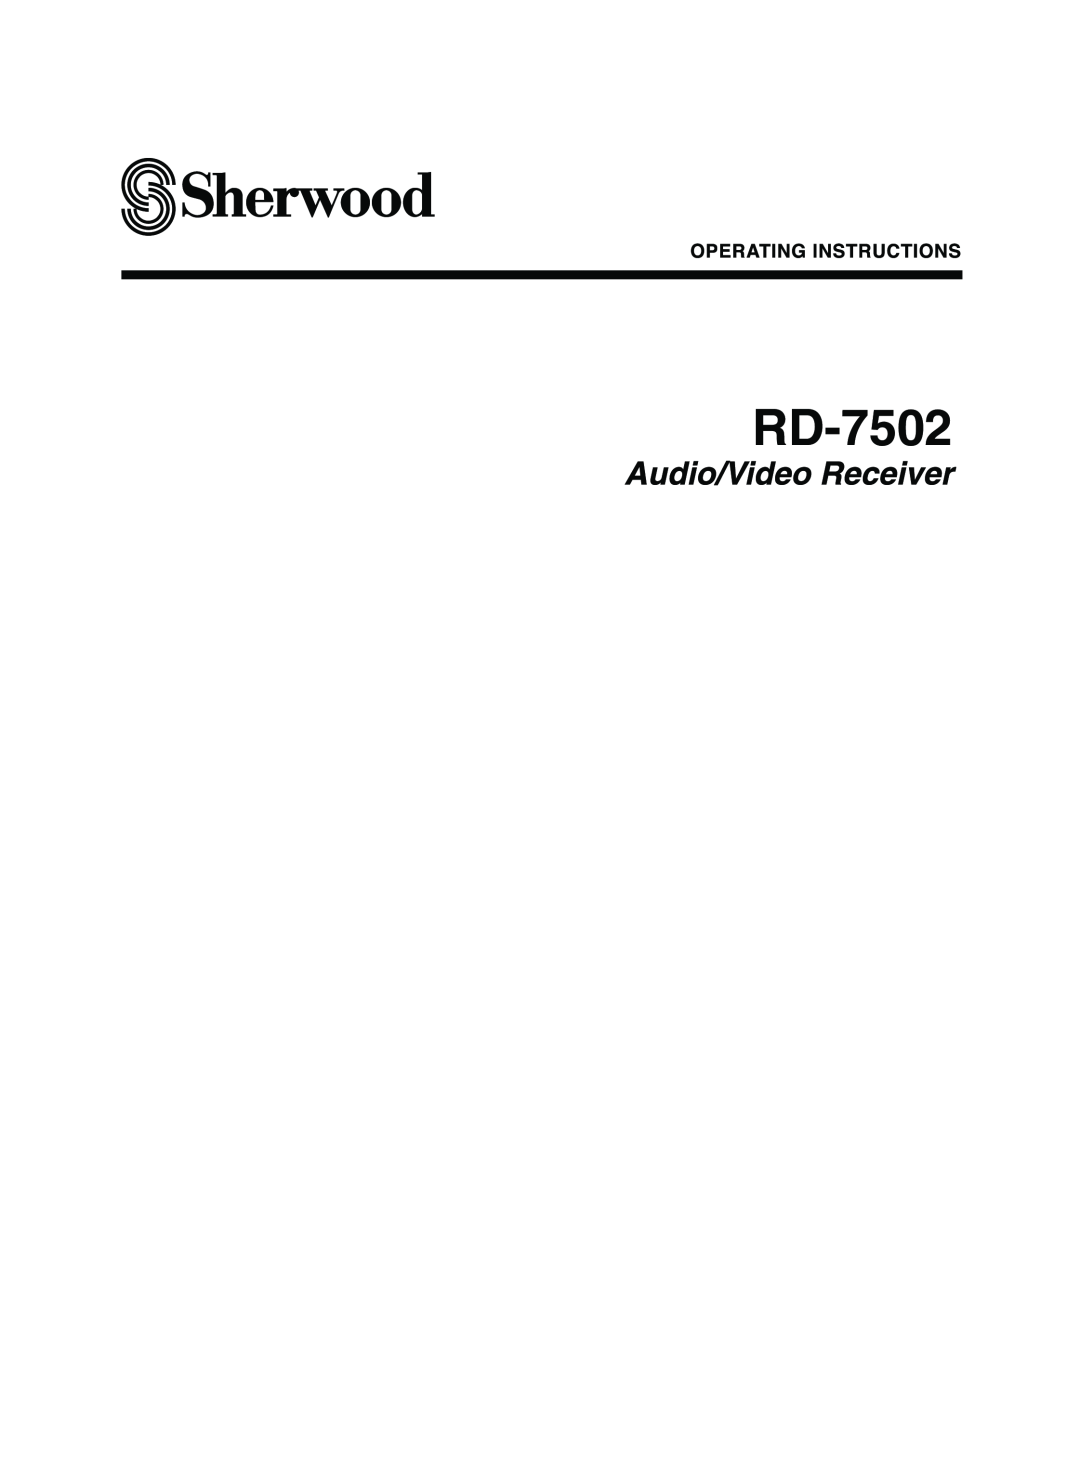 Sherwood RD-7502 manual 